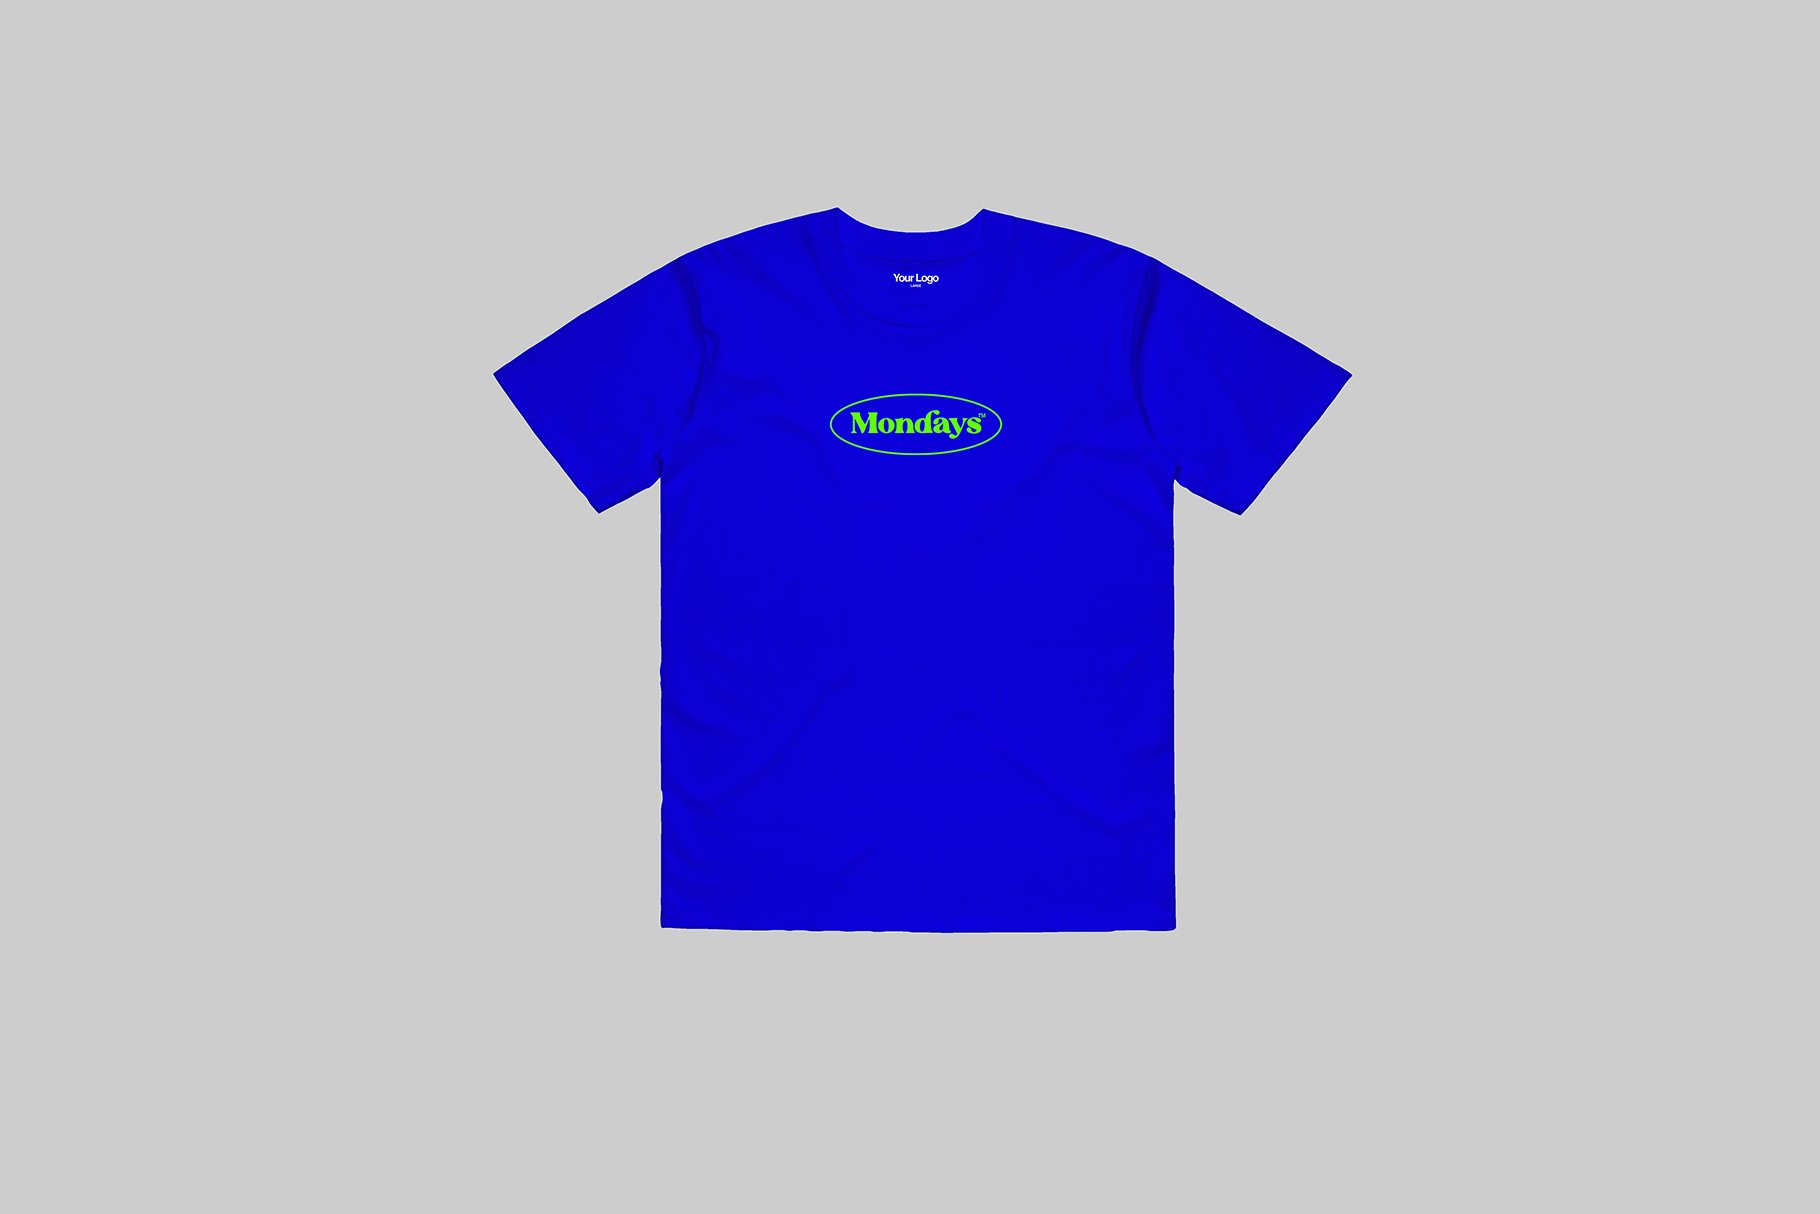 blue t shirt template